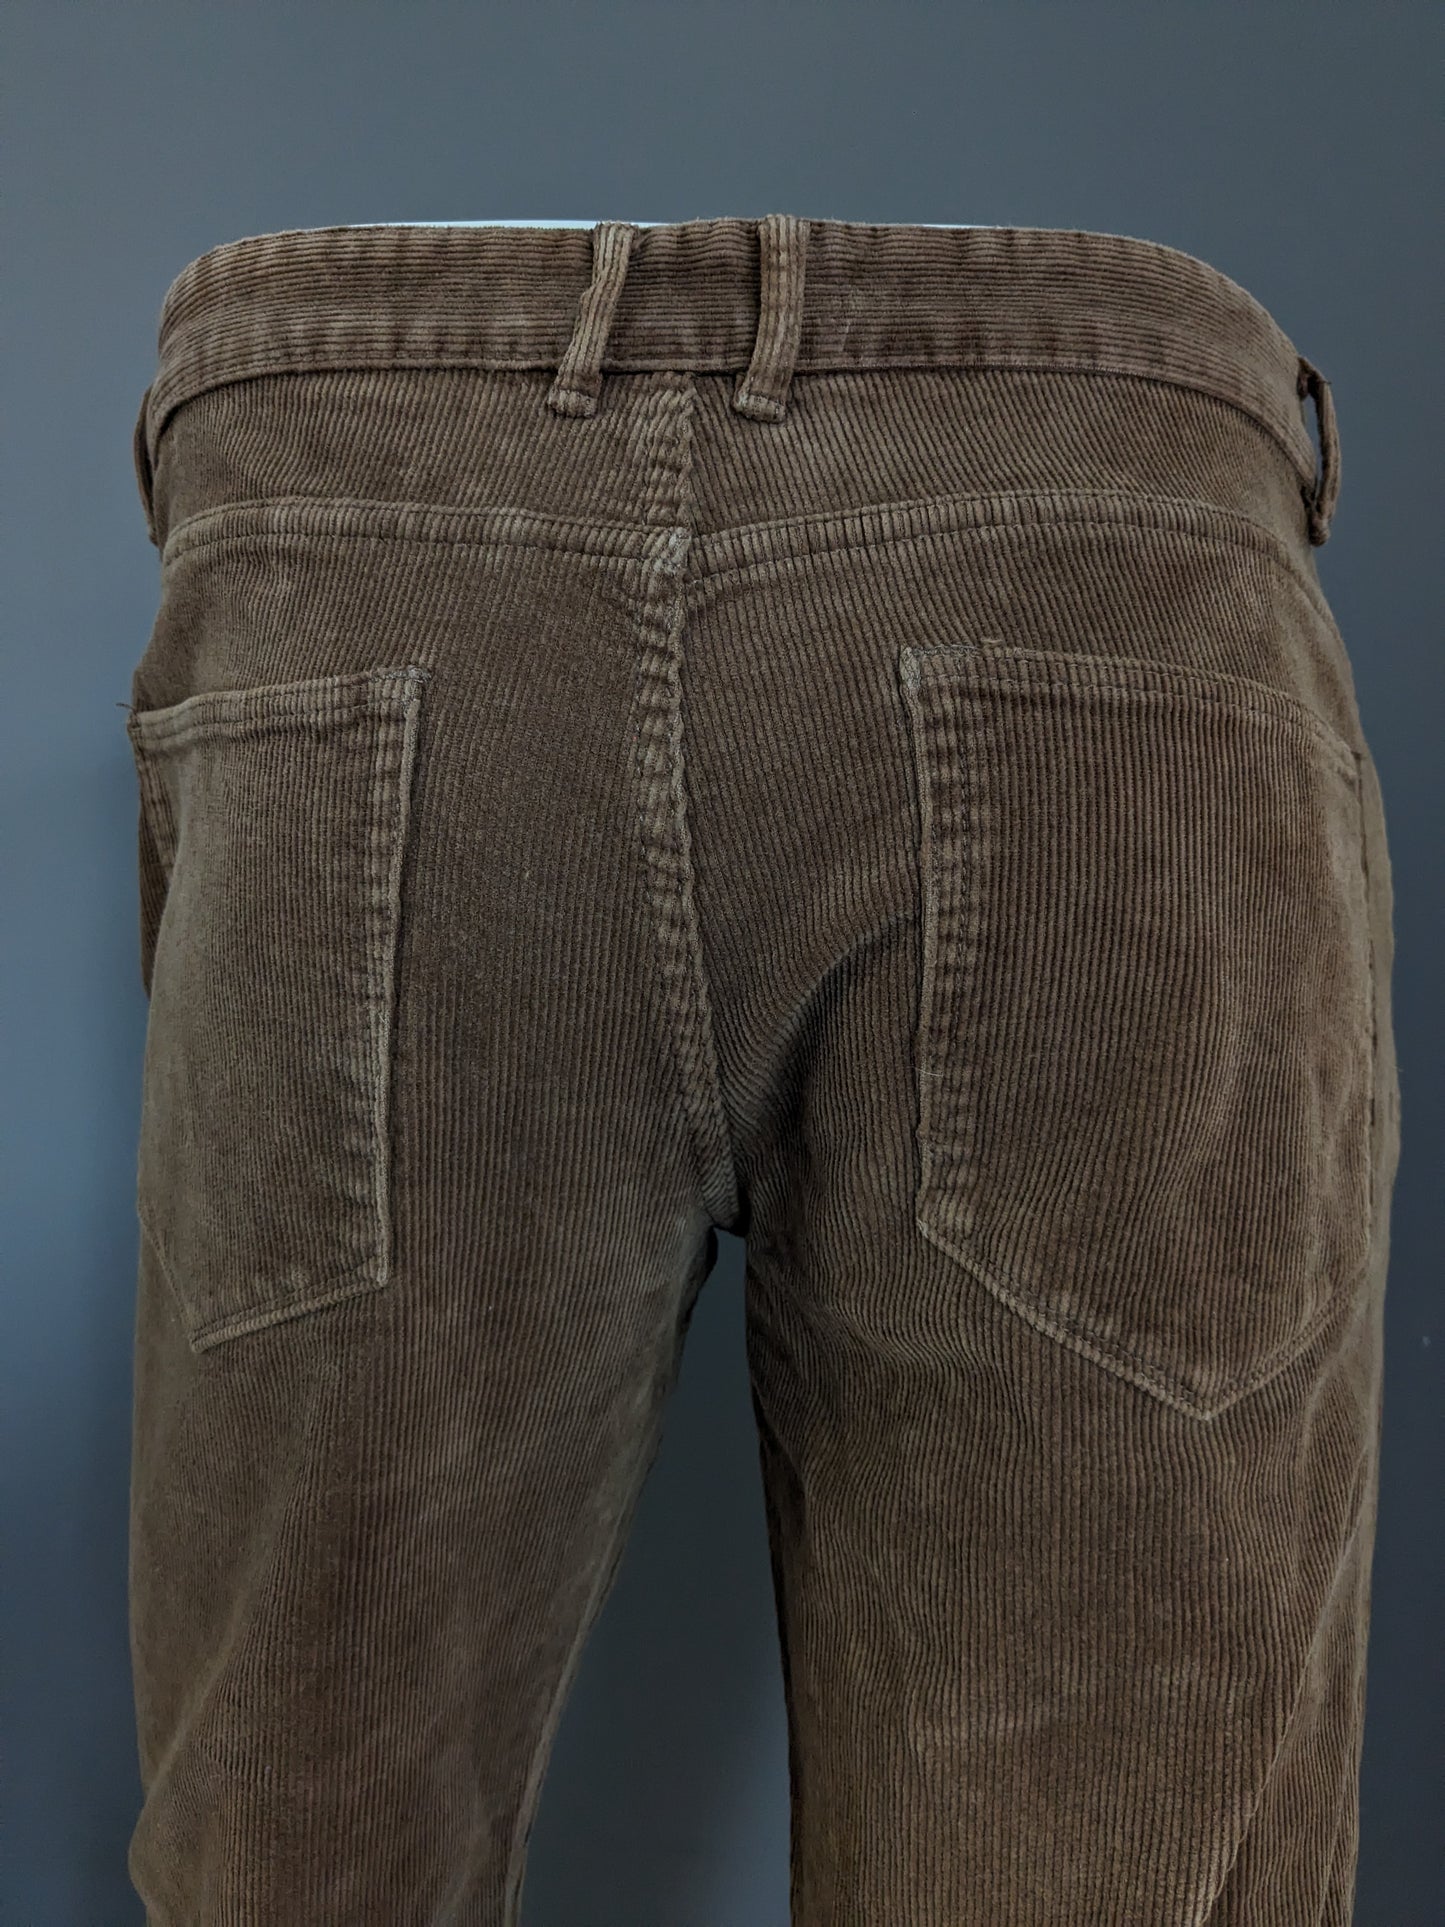 ACW 85 pantalones de costilla. Marrón. Tamaño W34 - L24. Modelo corto. Corte recto.